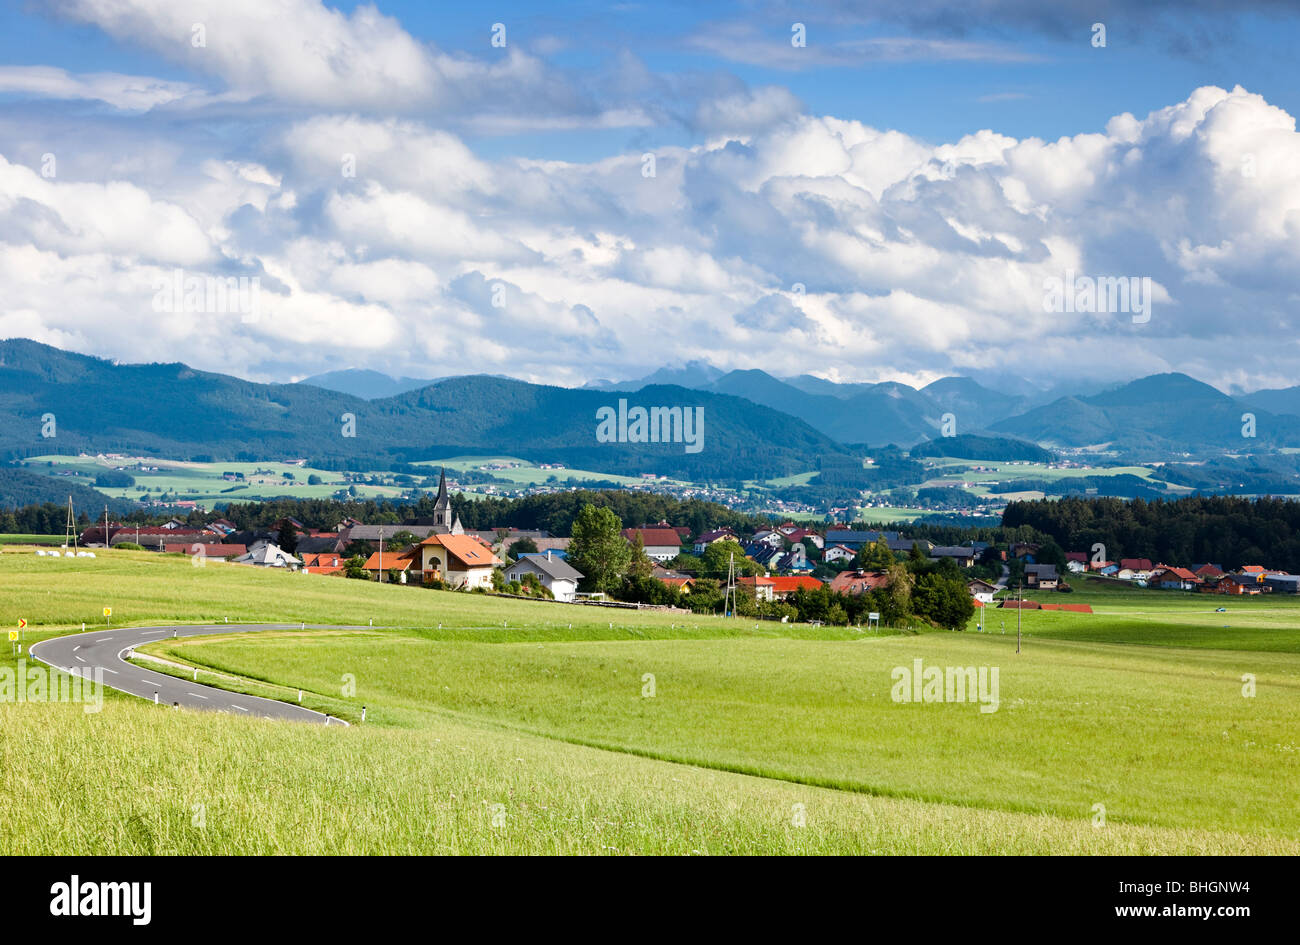 Villaggio di Schleedorf nelle montagne salisburghesi guardando verso le Alpi austriache, Austria, Europa Foto Stock